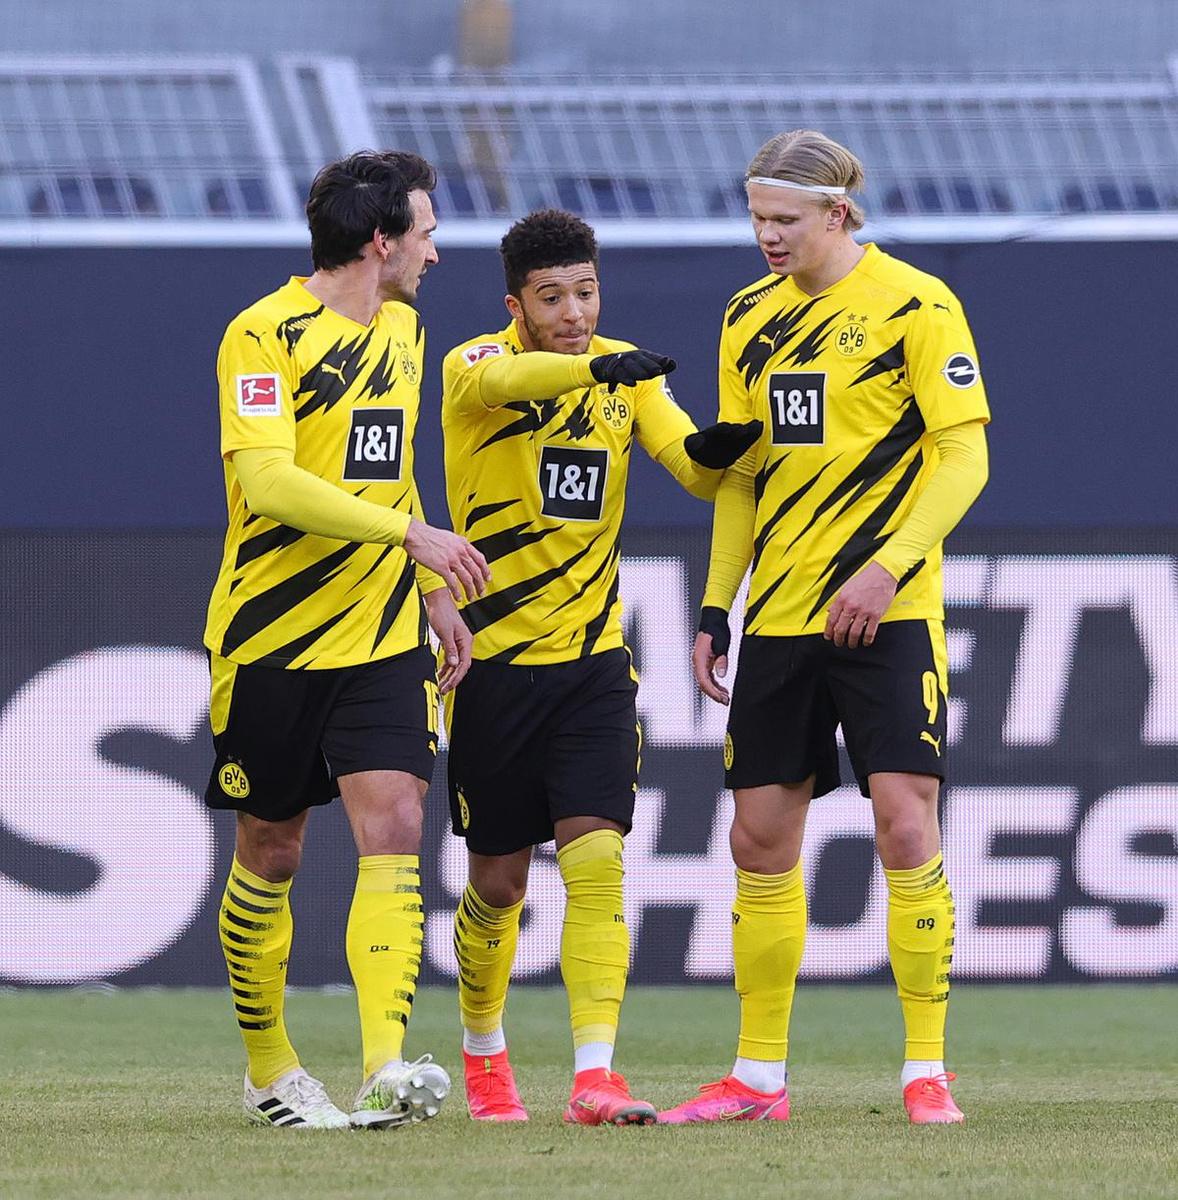 Moet een van deze drie toppers Dortmund verlaten om geld vrij te maken?